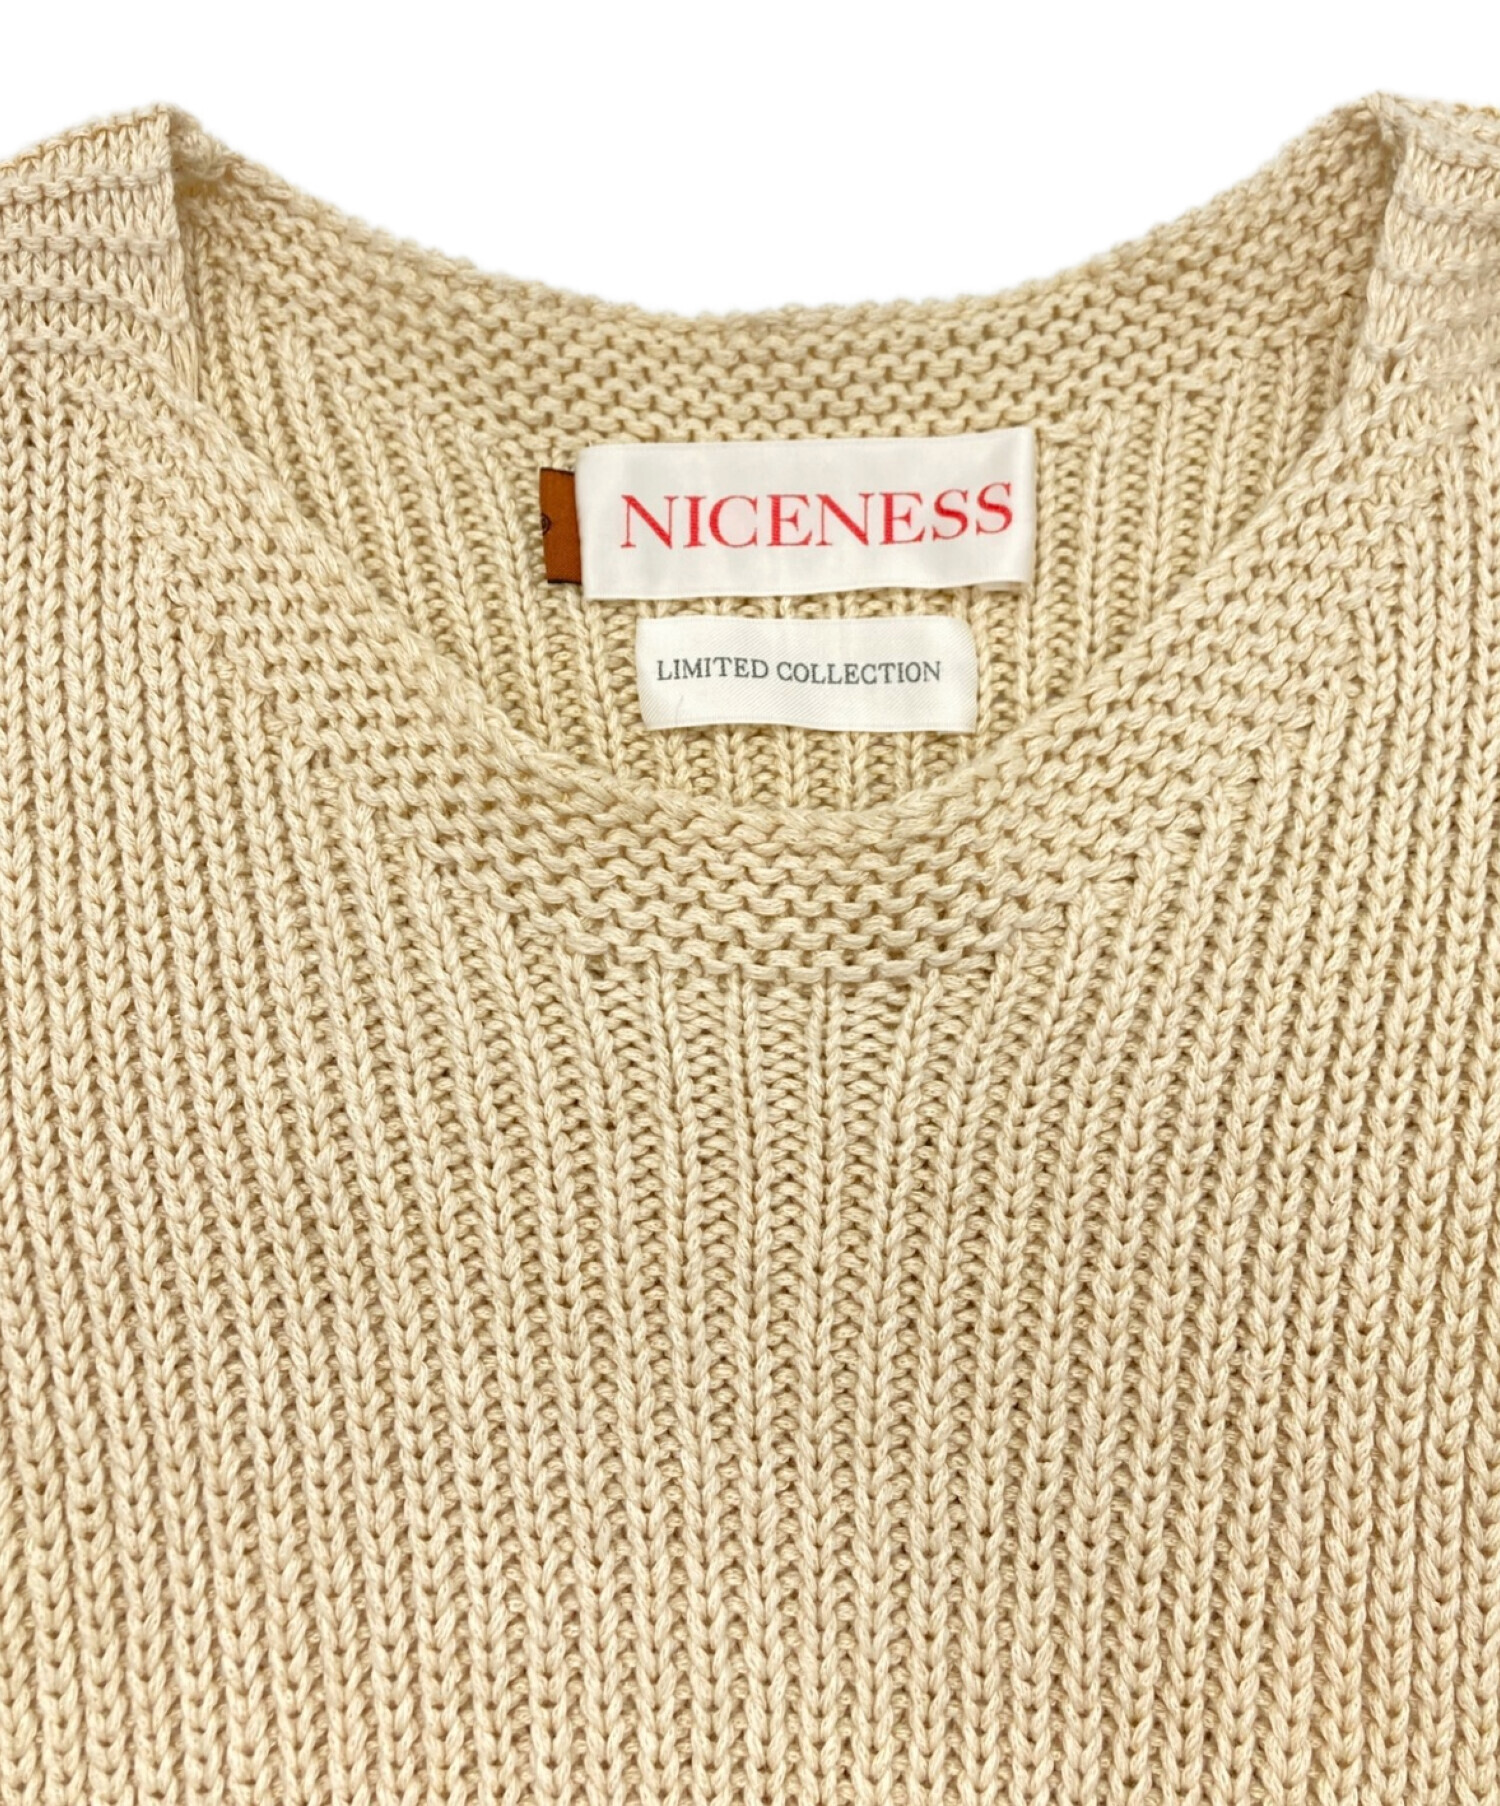 NICENESS LENNY M ベスト ナイスネス - メンズファッション